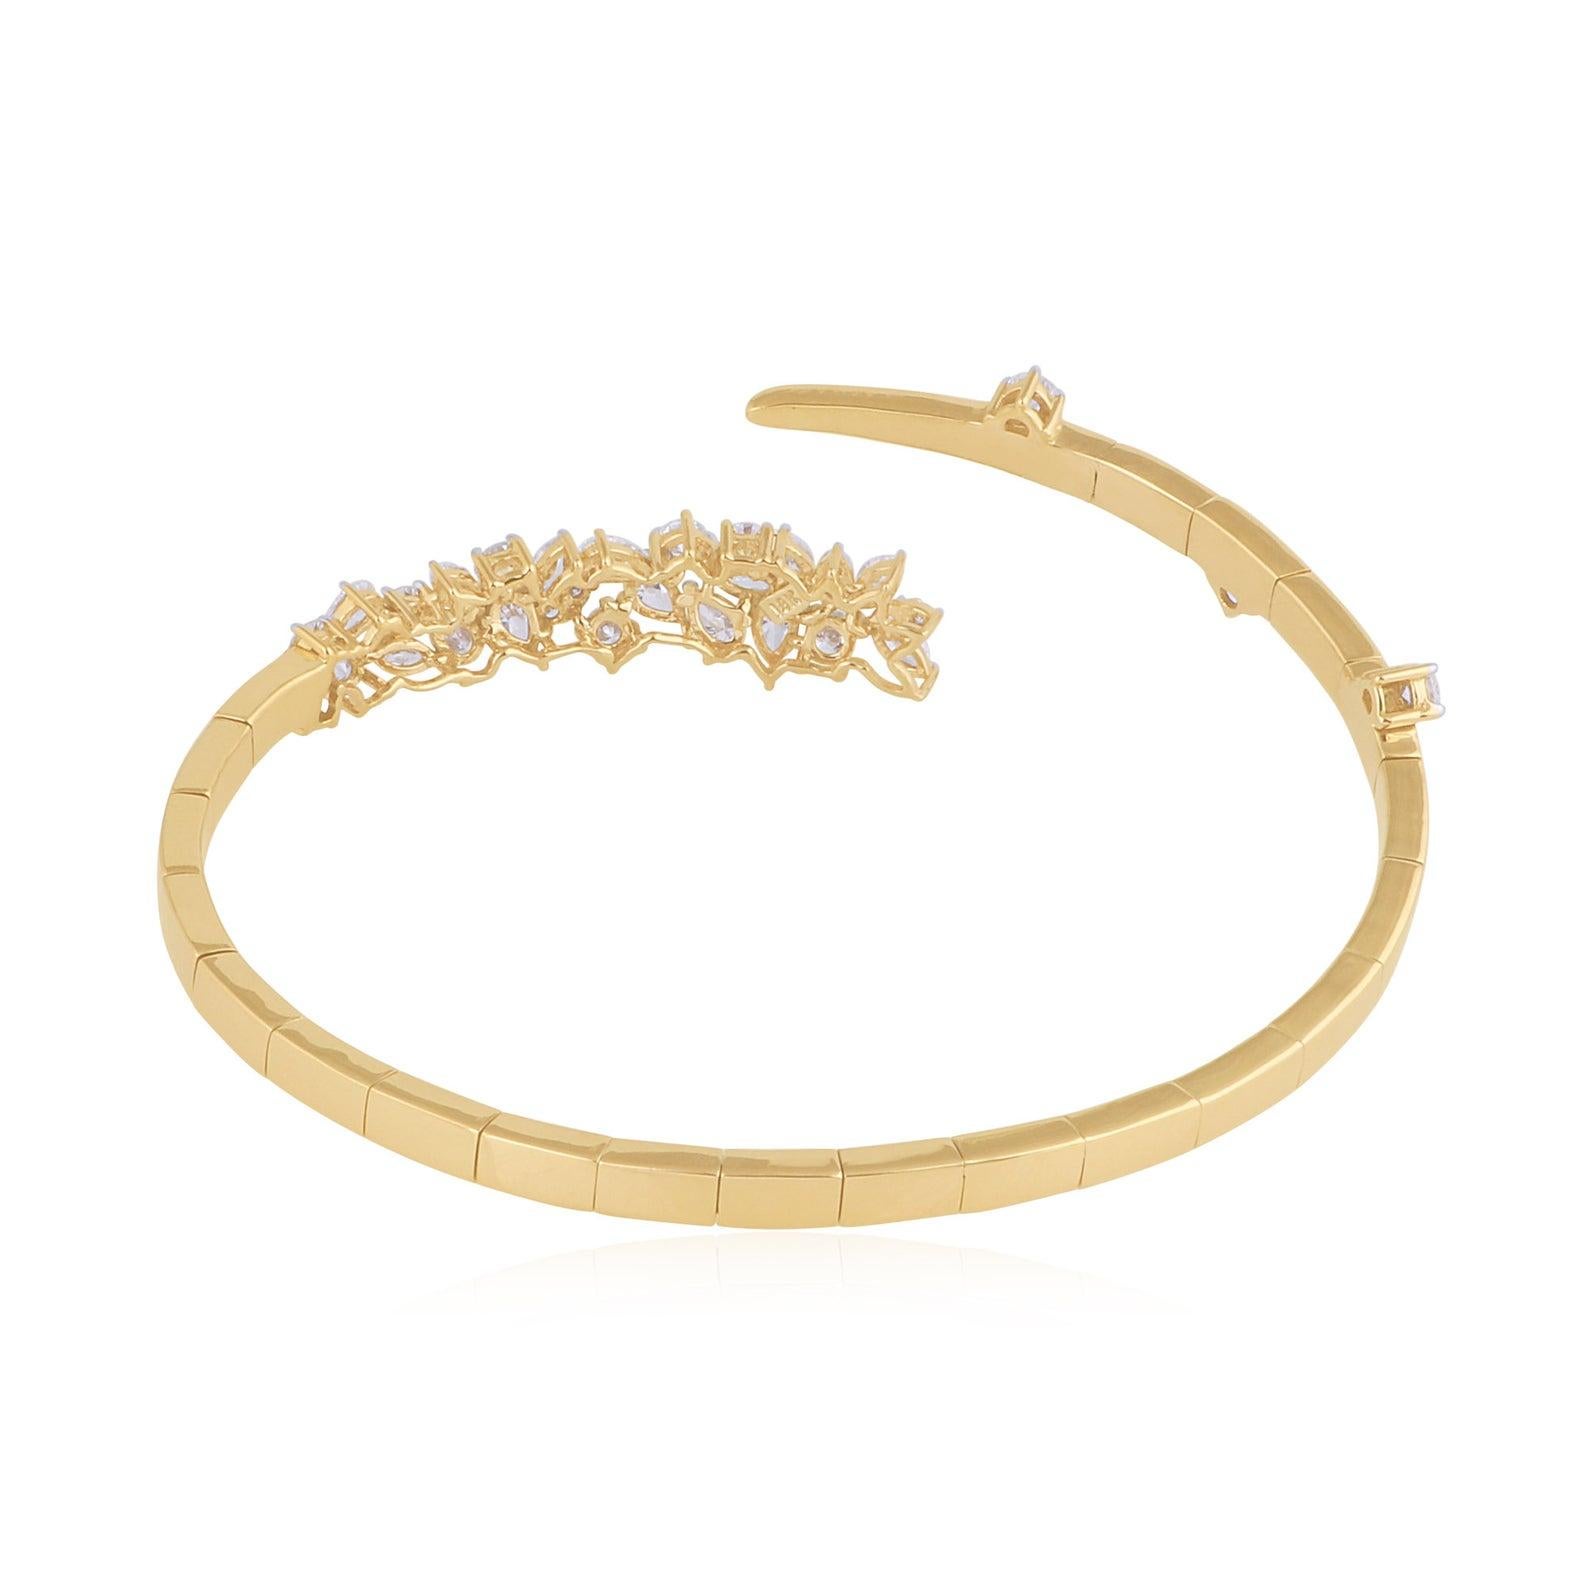 Fabriqué en or rose 14 carats, ce bracelet à maillons est serti à la main de 2,35 carats de diamants étincelants. Disponible en or jaune, rose et blanc. 

SUIVEZ la vitrine de MEGHNA JEWELS pour découvrir la dernière collection et les pièces